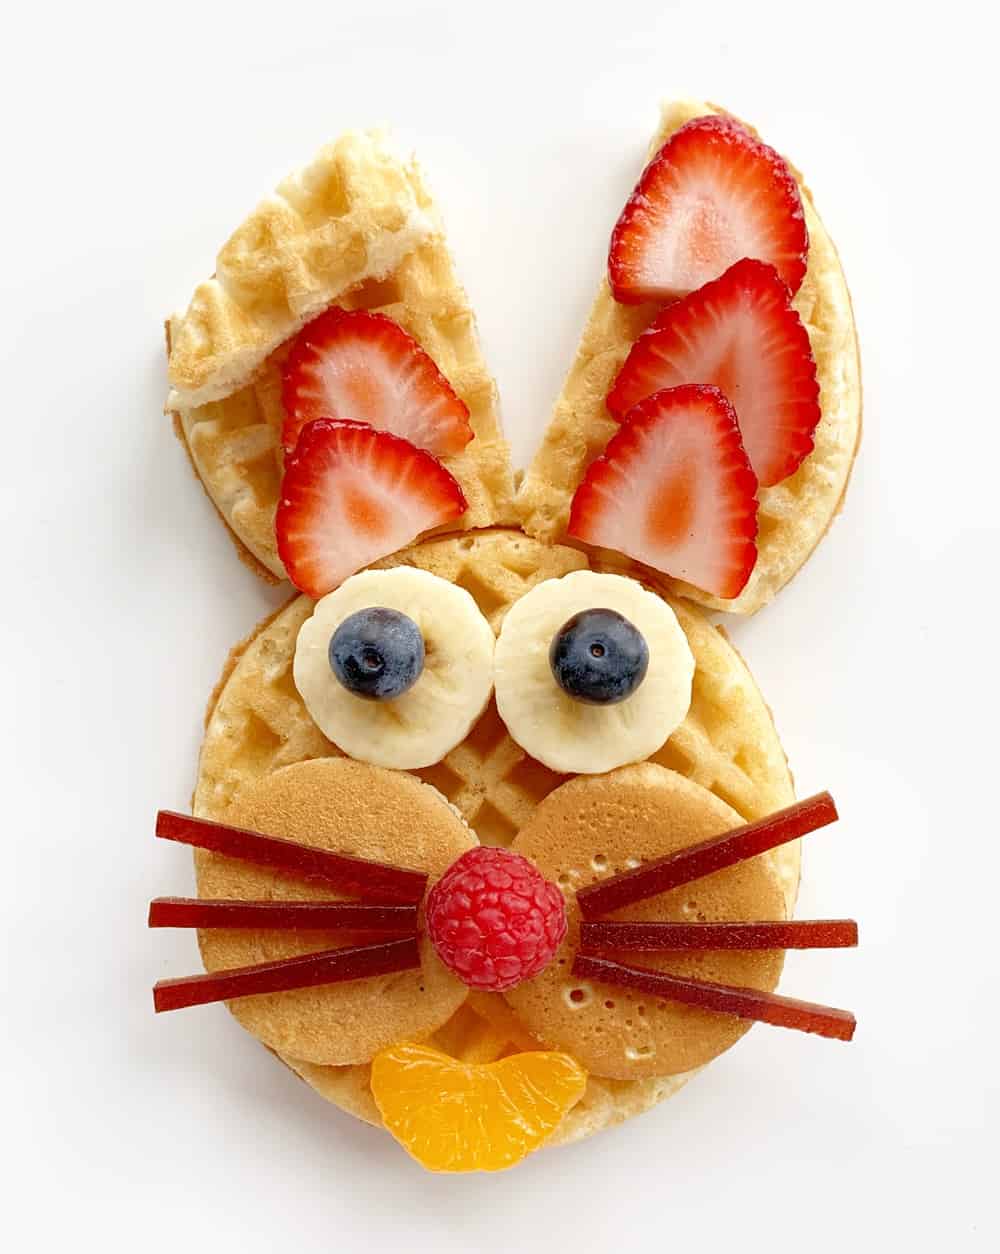 Easter breakfast bunny waffles